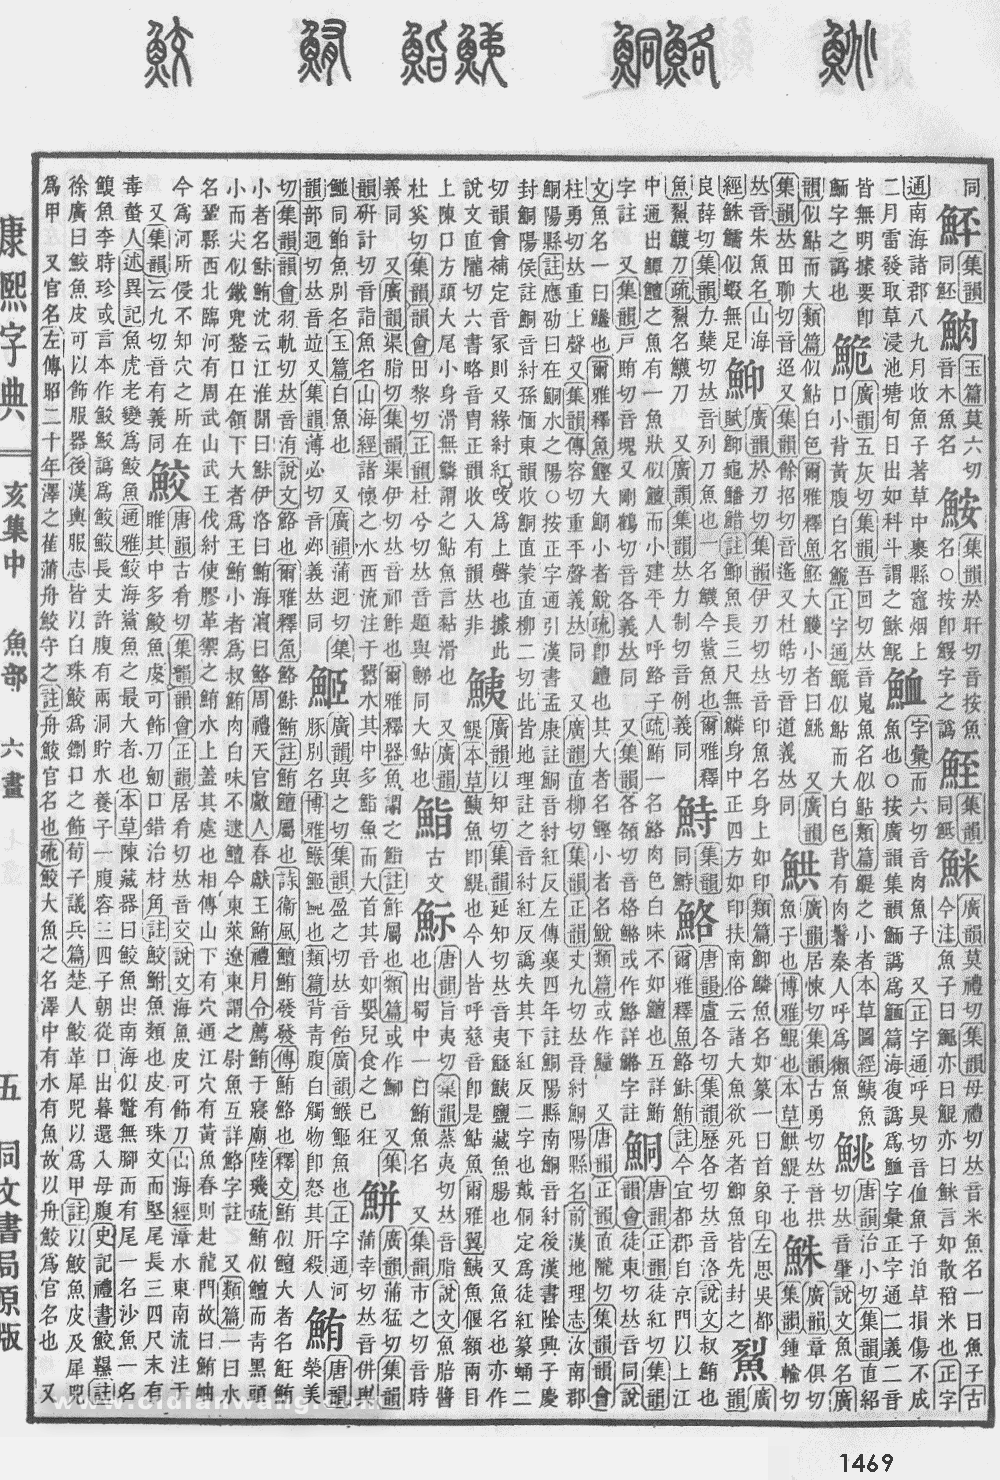 康熙字典掃描版第1469頁